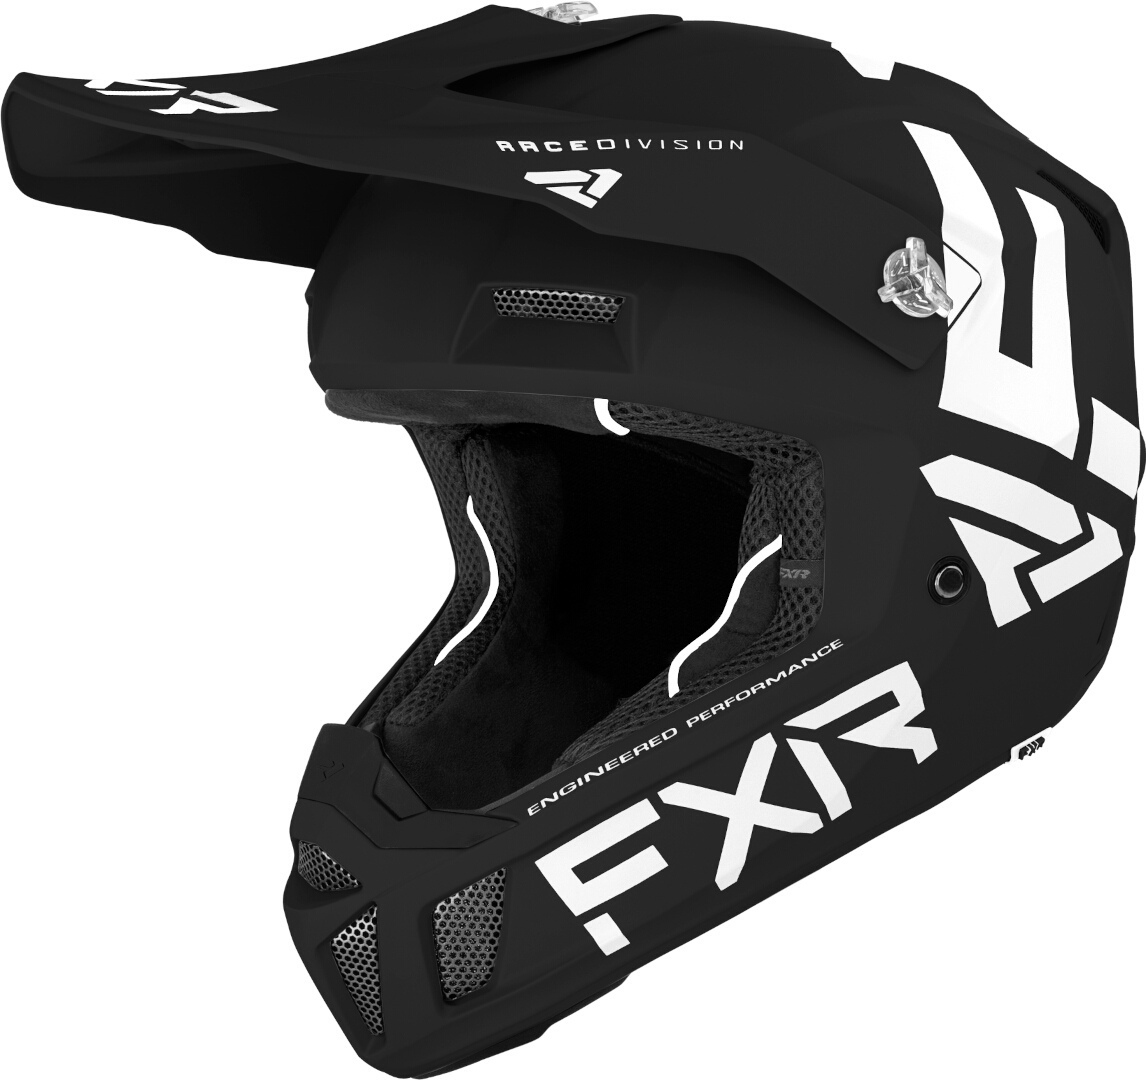 Шлем FXR Clutch CX MX Gear для мотокросса, черный/белый шлем для мотокросса clutch cx mx gear fxr белый черный